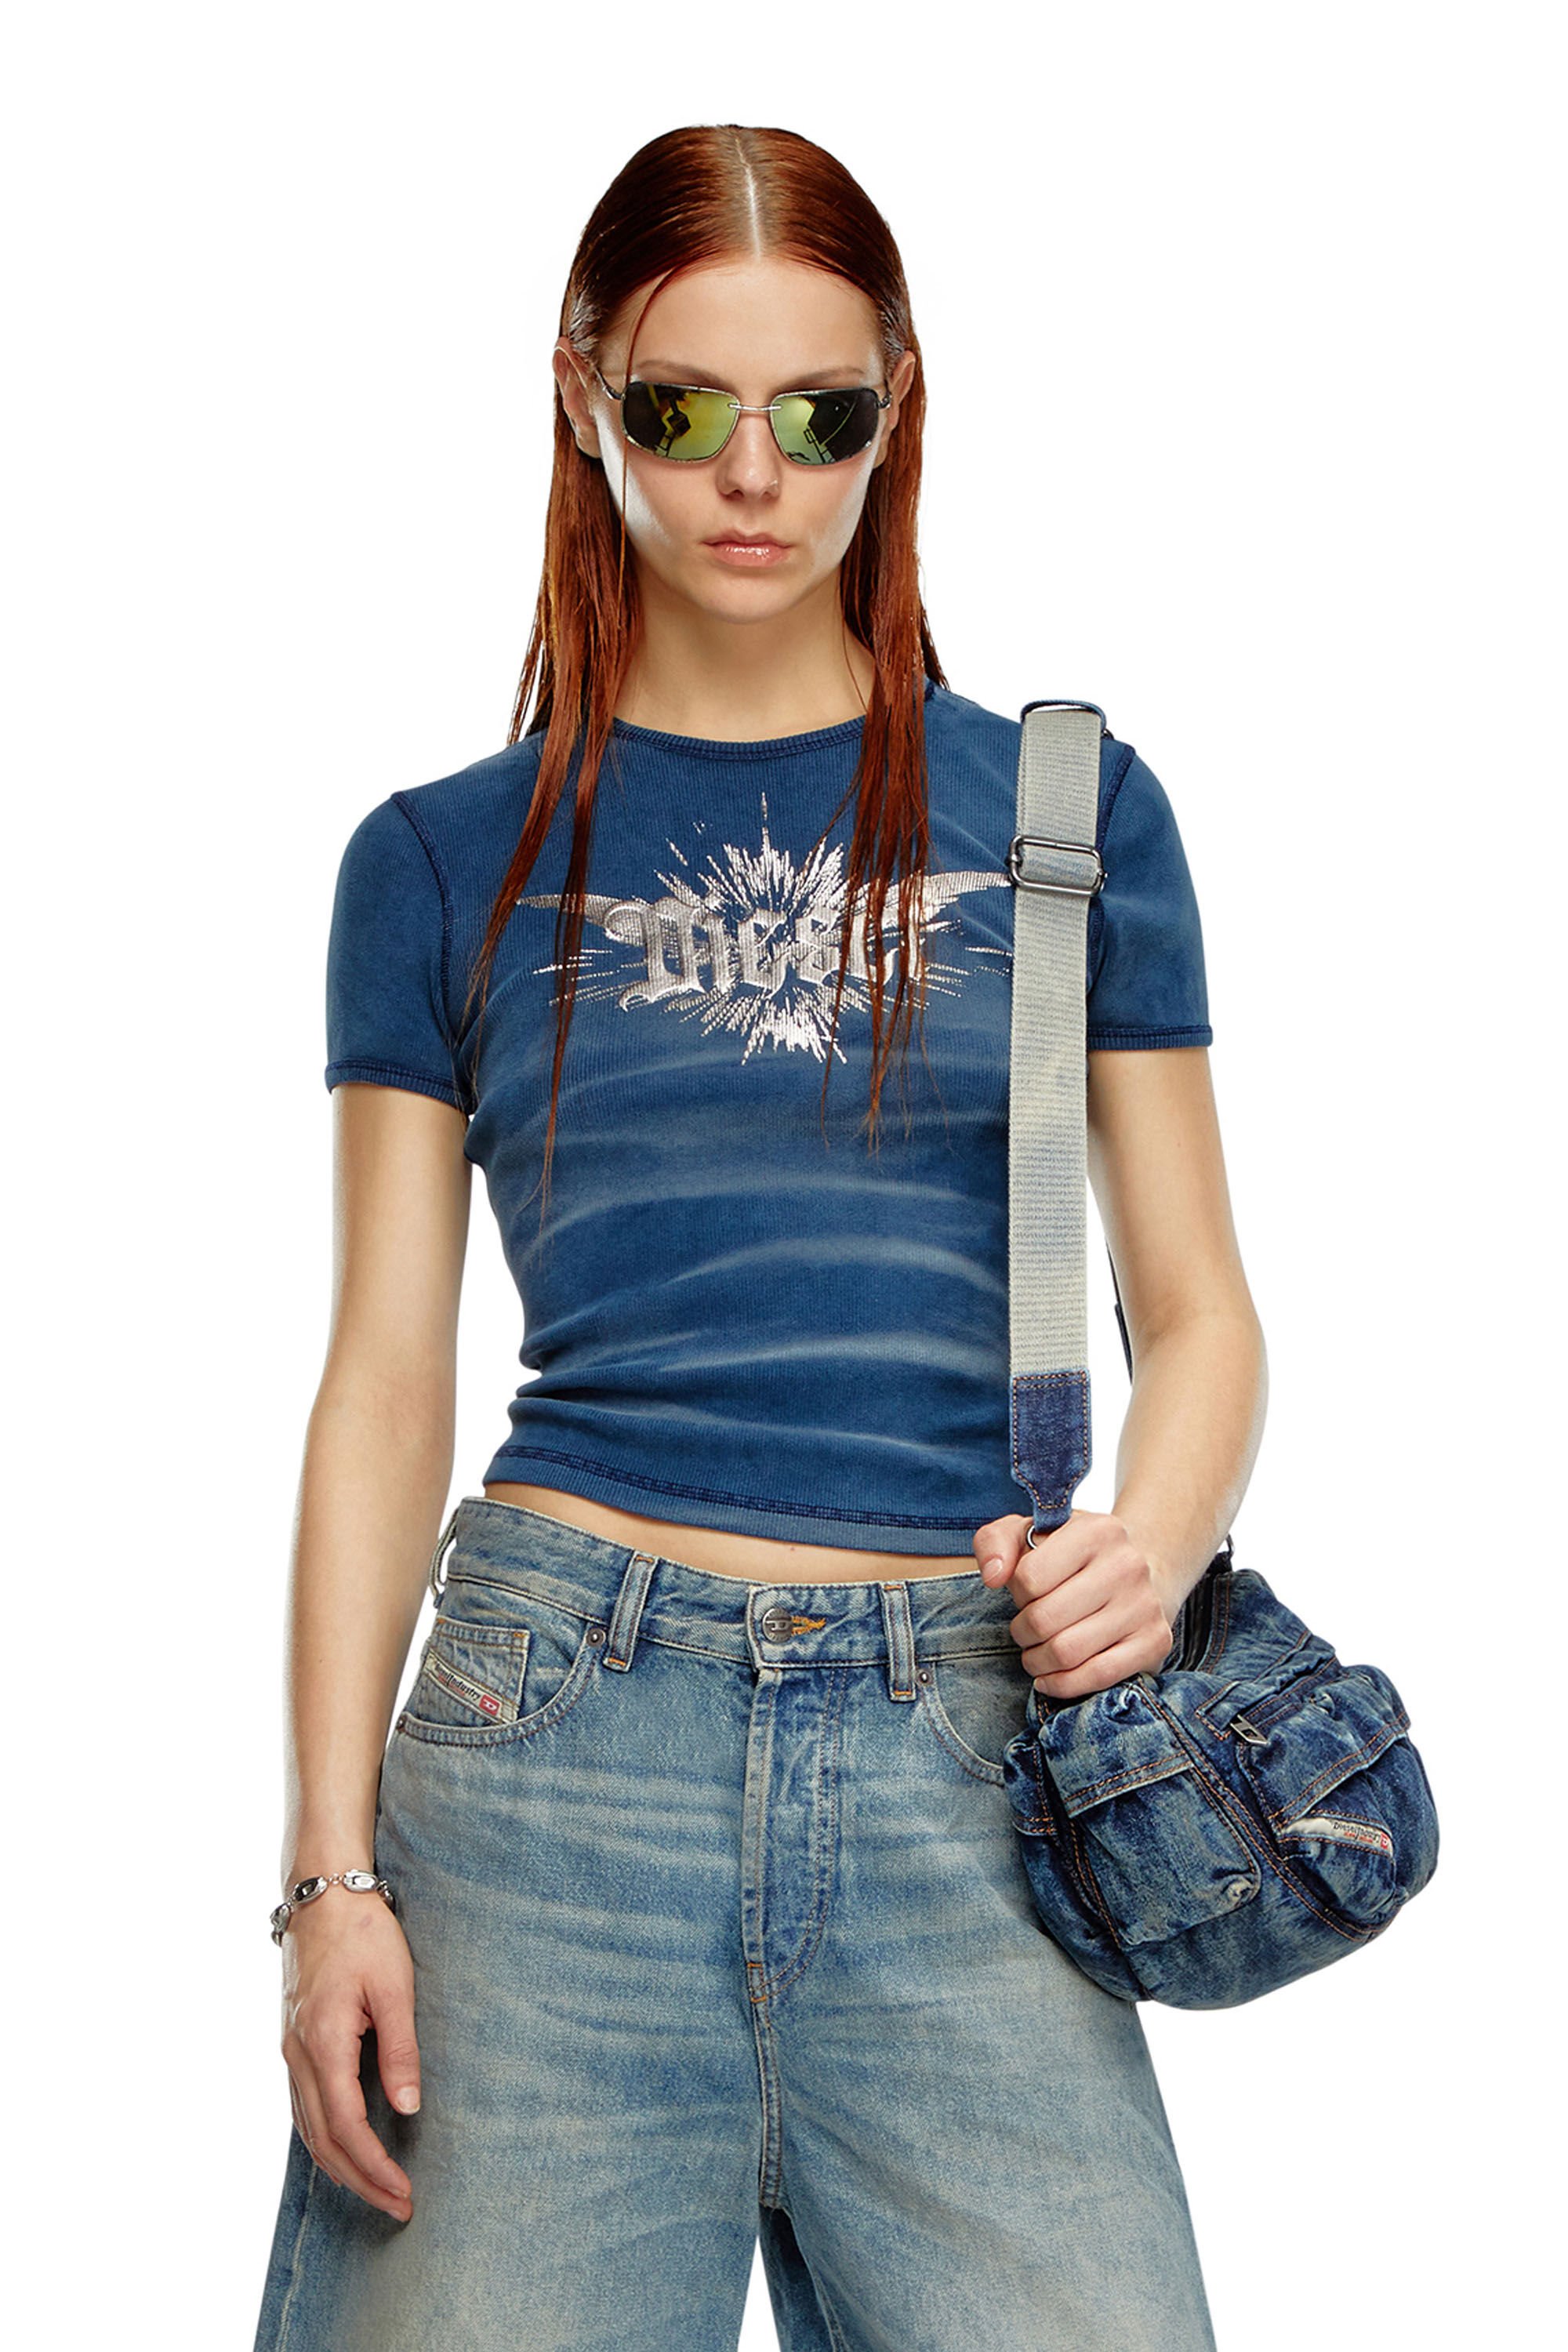 Diesel - T-ELE-LONG-P2, Mujer Camiseta con estampado de lámina de Diesel alada in Azul marino - Image 3